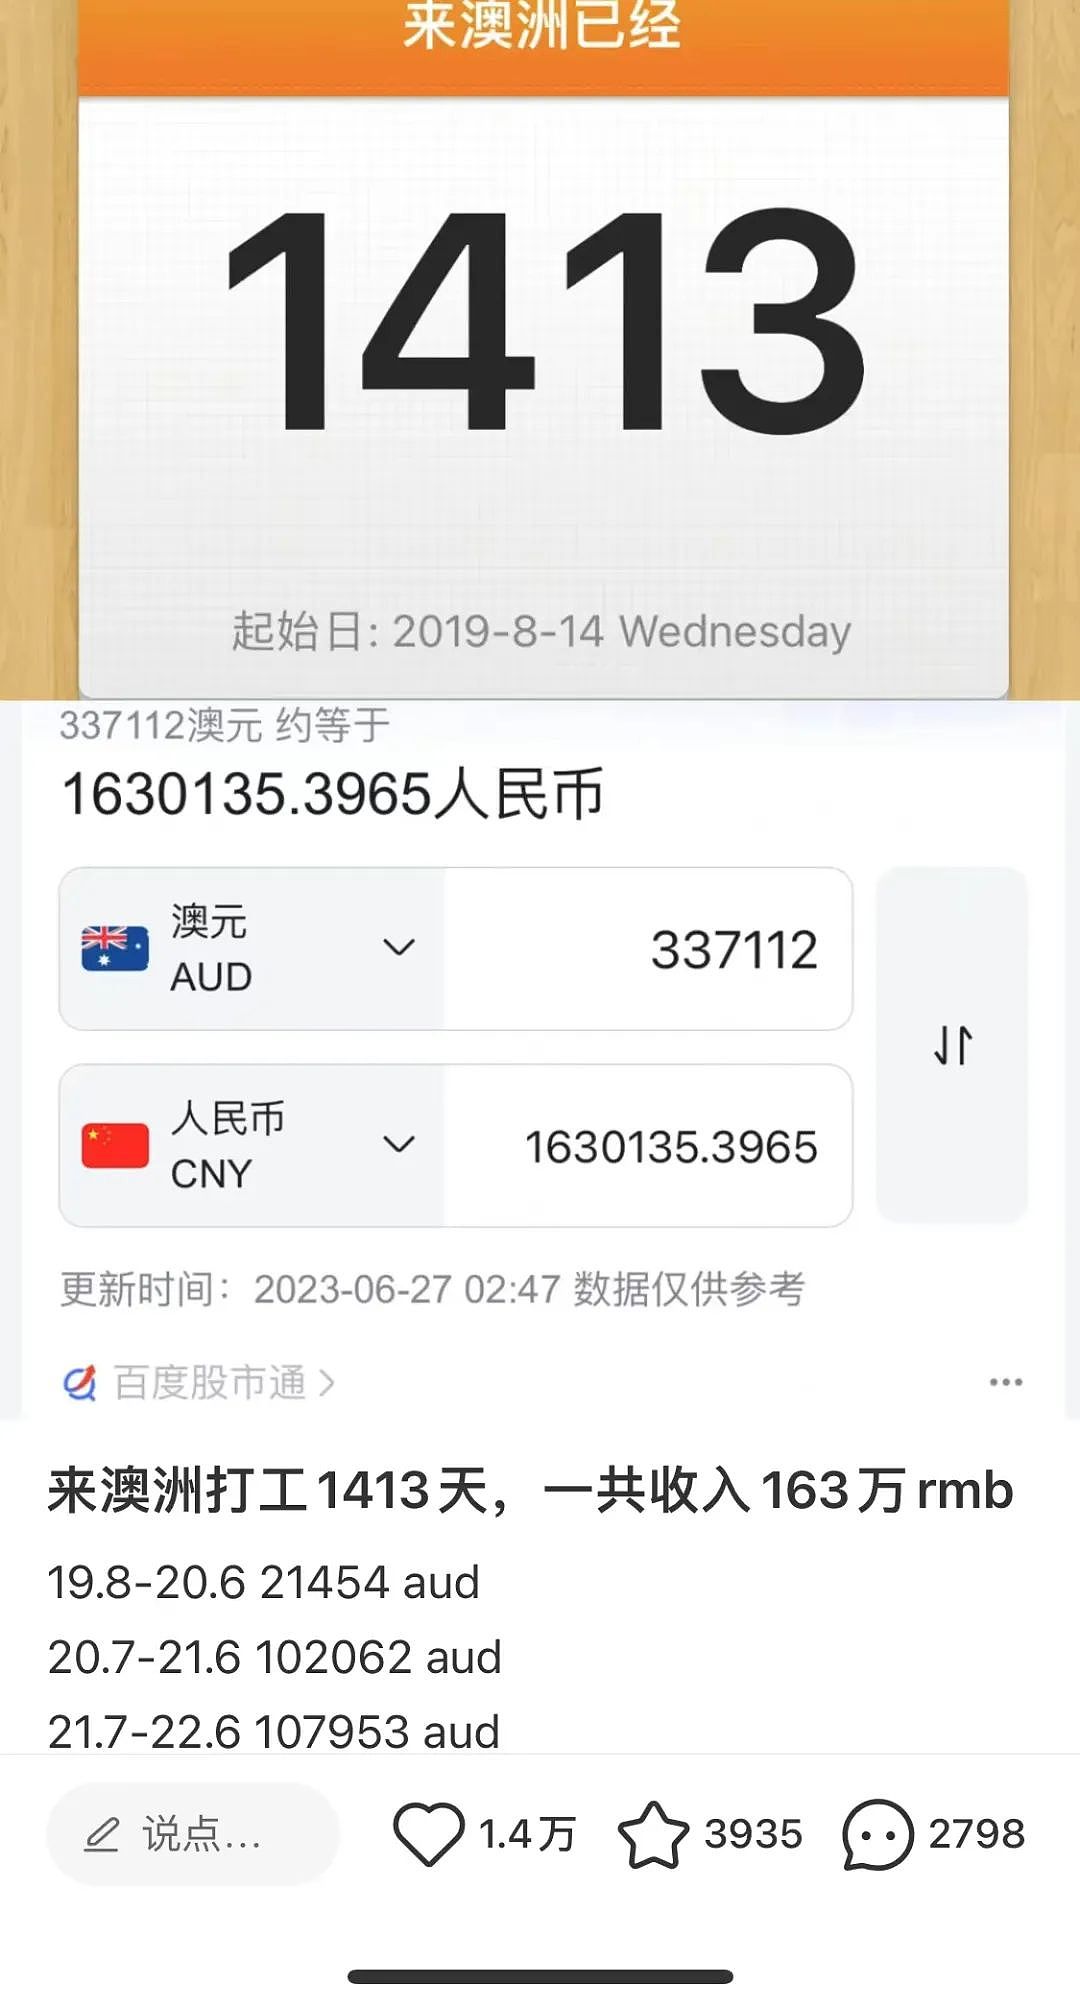 中国女生在澳打工4年赚163万？！帖子引爆社媒，网友吵翻天，还被质疑色情！在澳华人：不算多！挣的钱能带多少回国？我们算一算 - 3